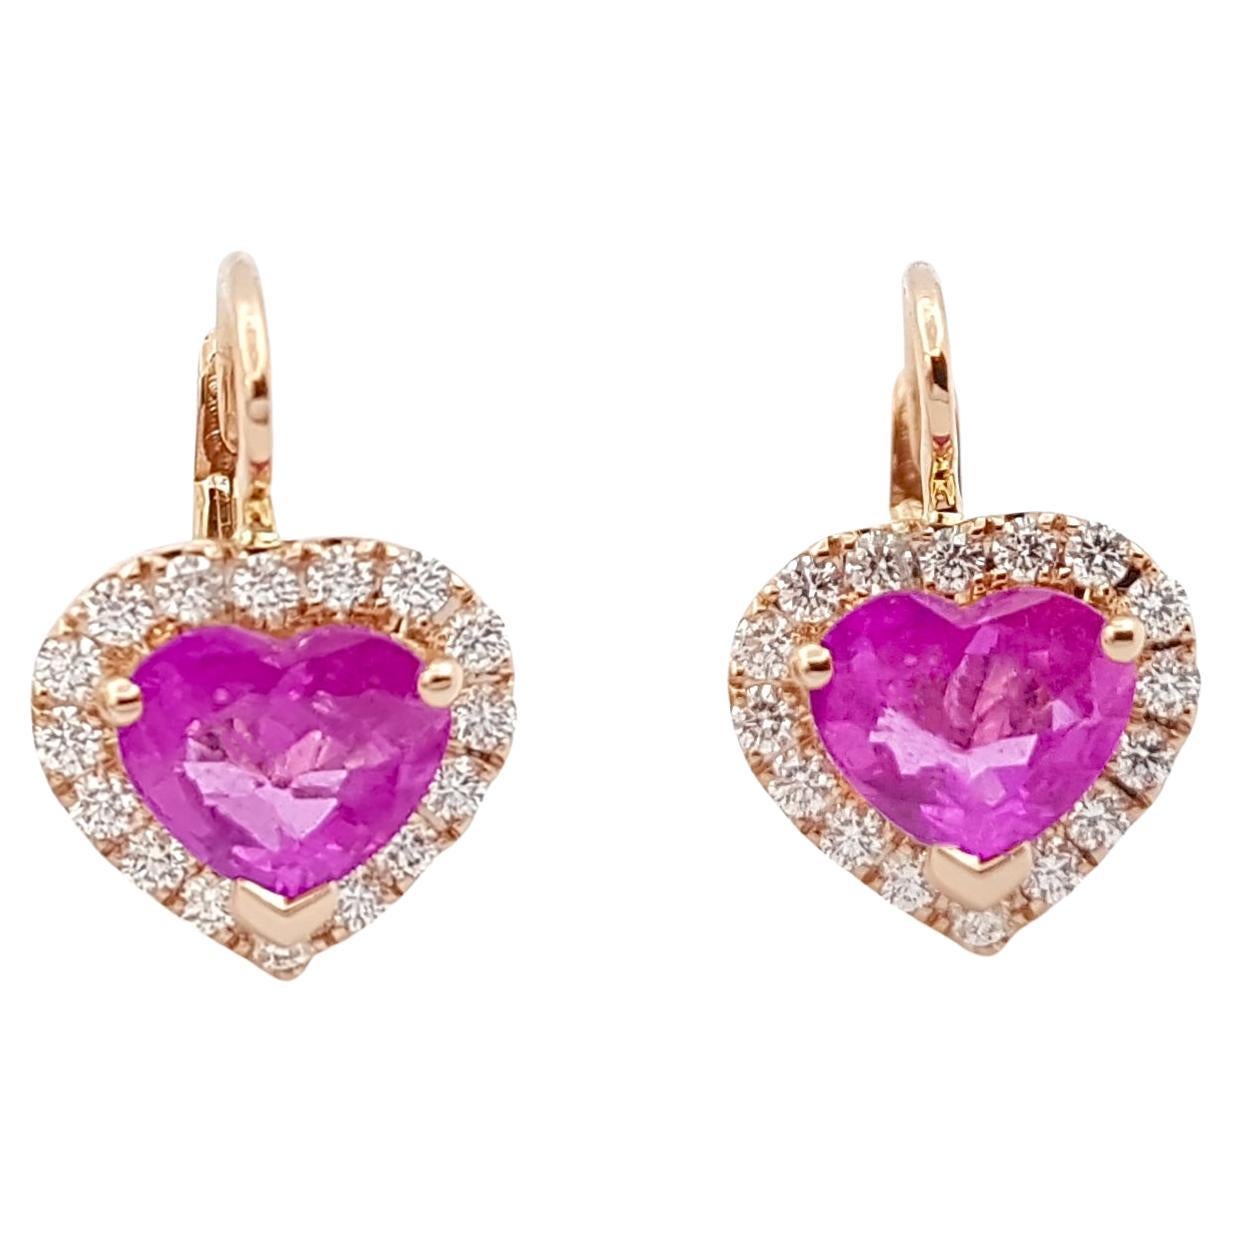 Ohrringe in Herzform mit rosa Saphir und Diamant in 18 Karat Roségold gefasst